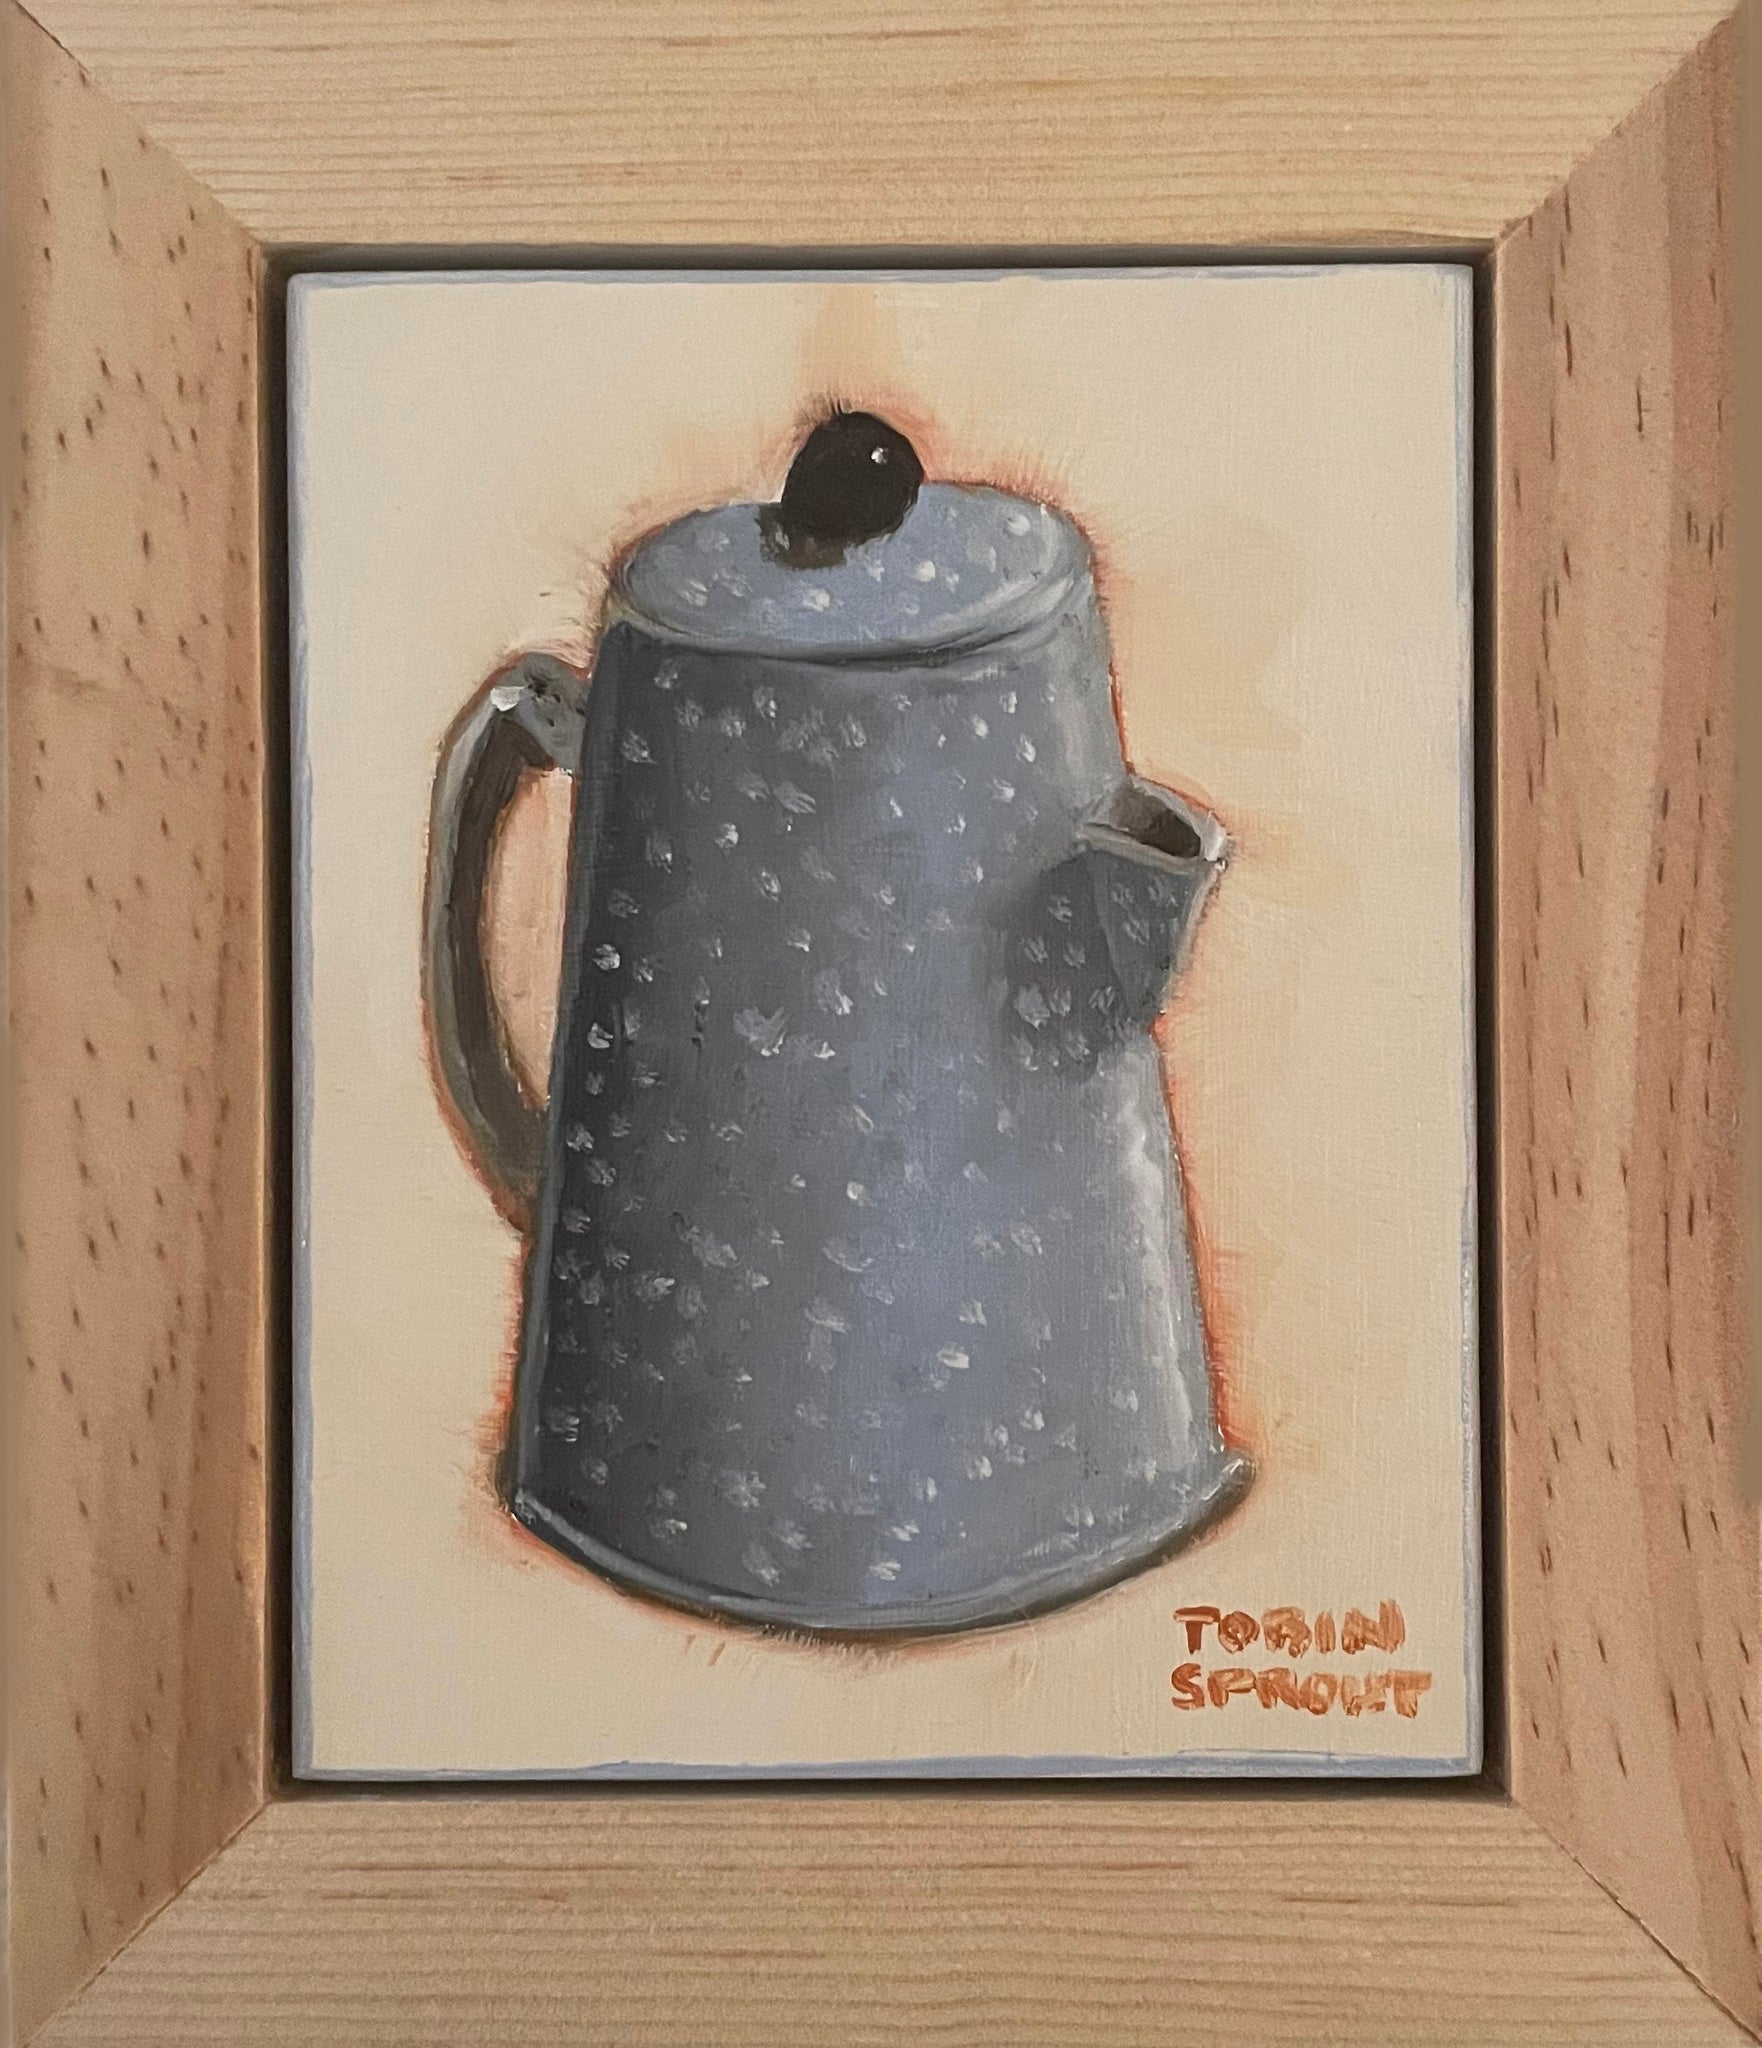 Cowboy Coffee Pot – Tobin Sprout